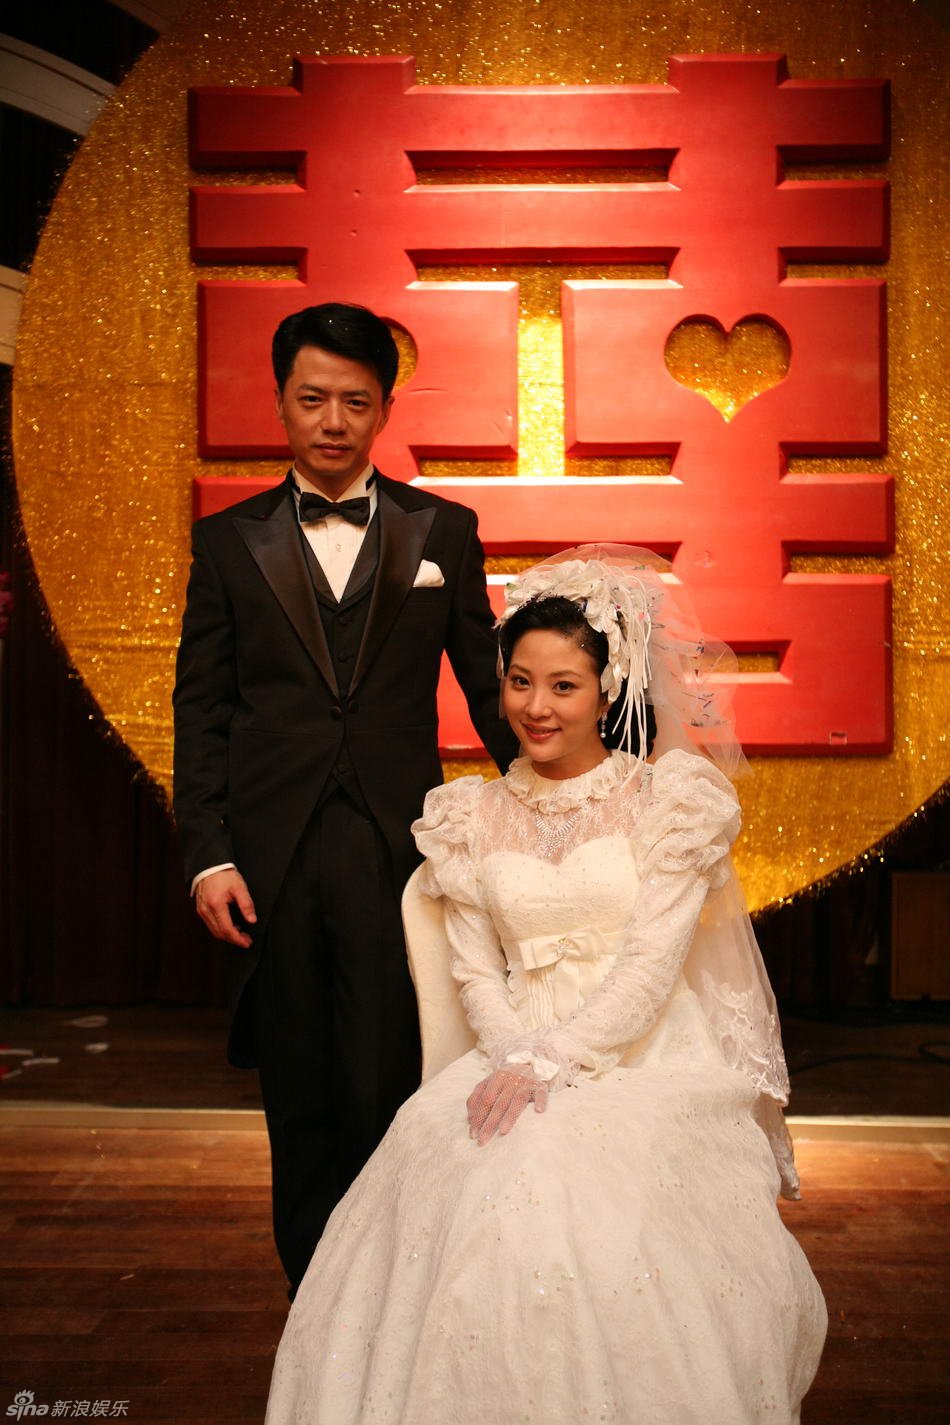 段丽阳和谁结婚了图片